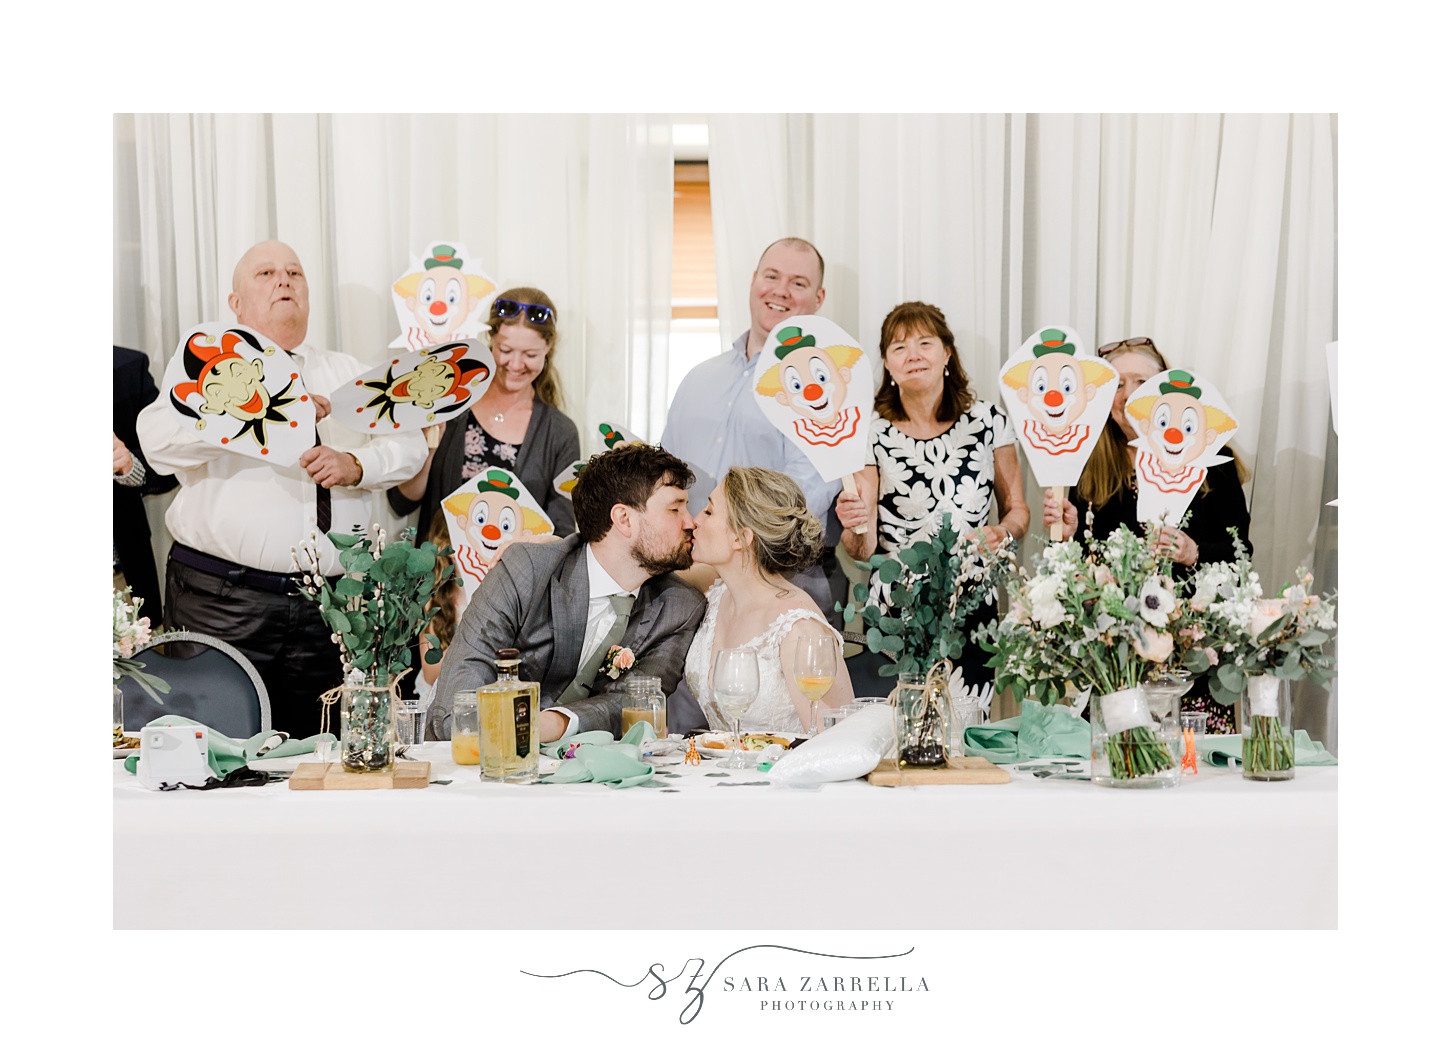 guests pose behind bride and groom holding up joker masks